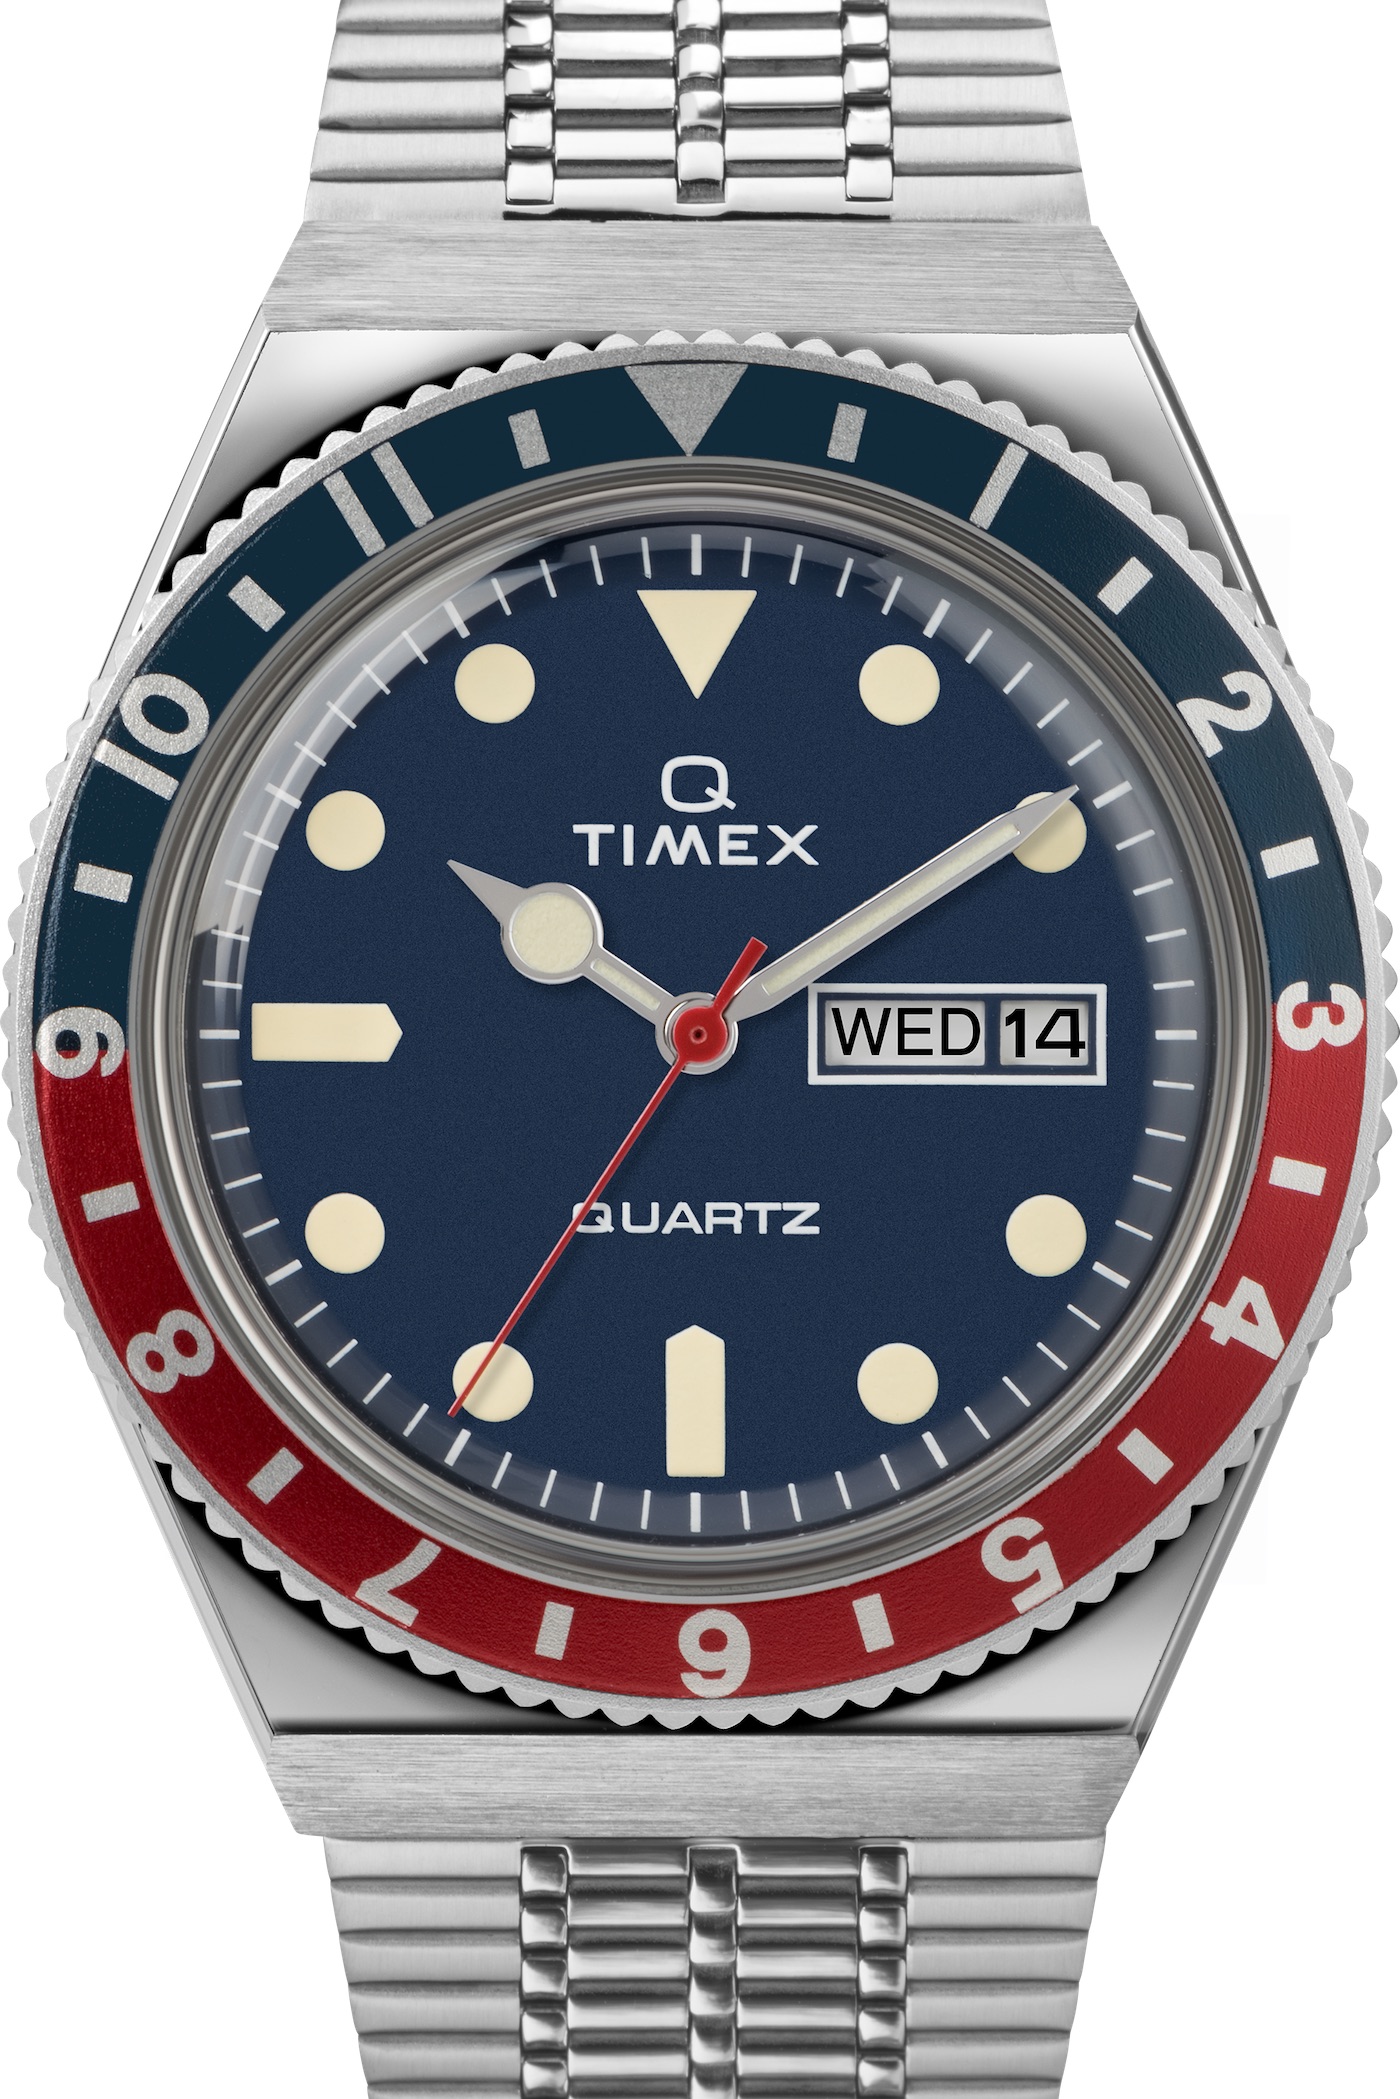 Q-TImex-Divers-Reissue-Watch